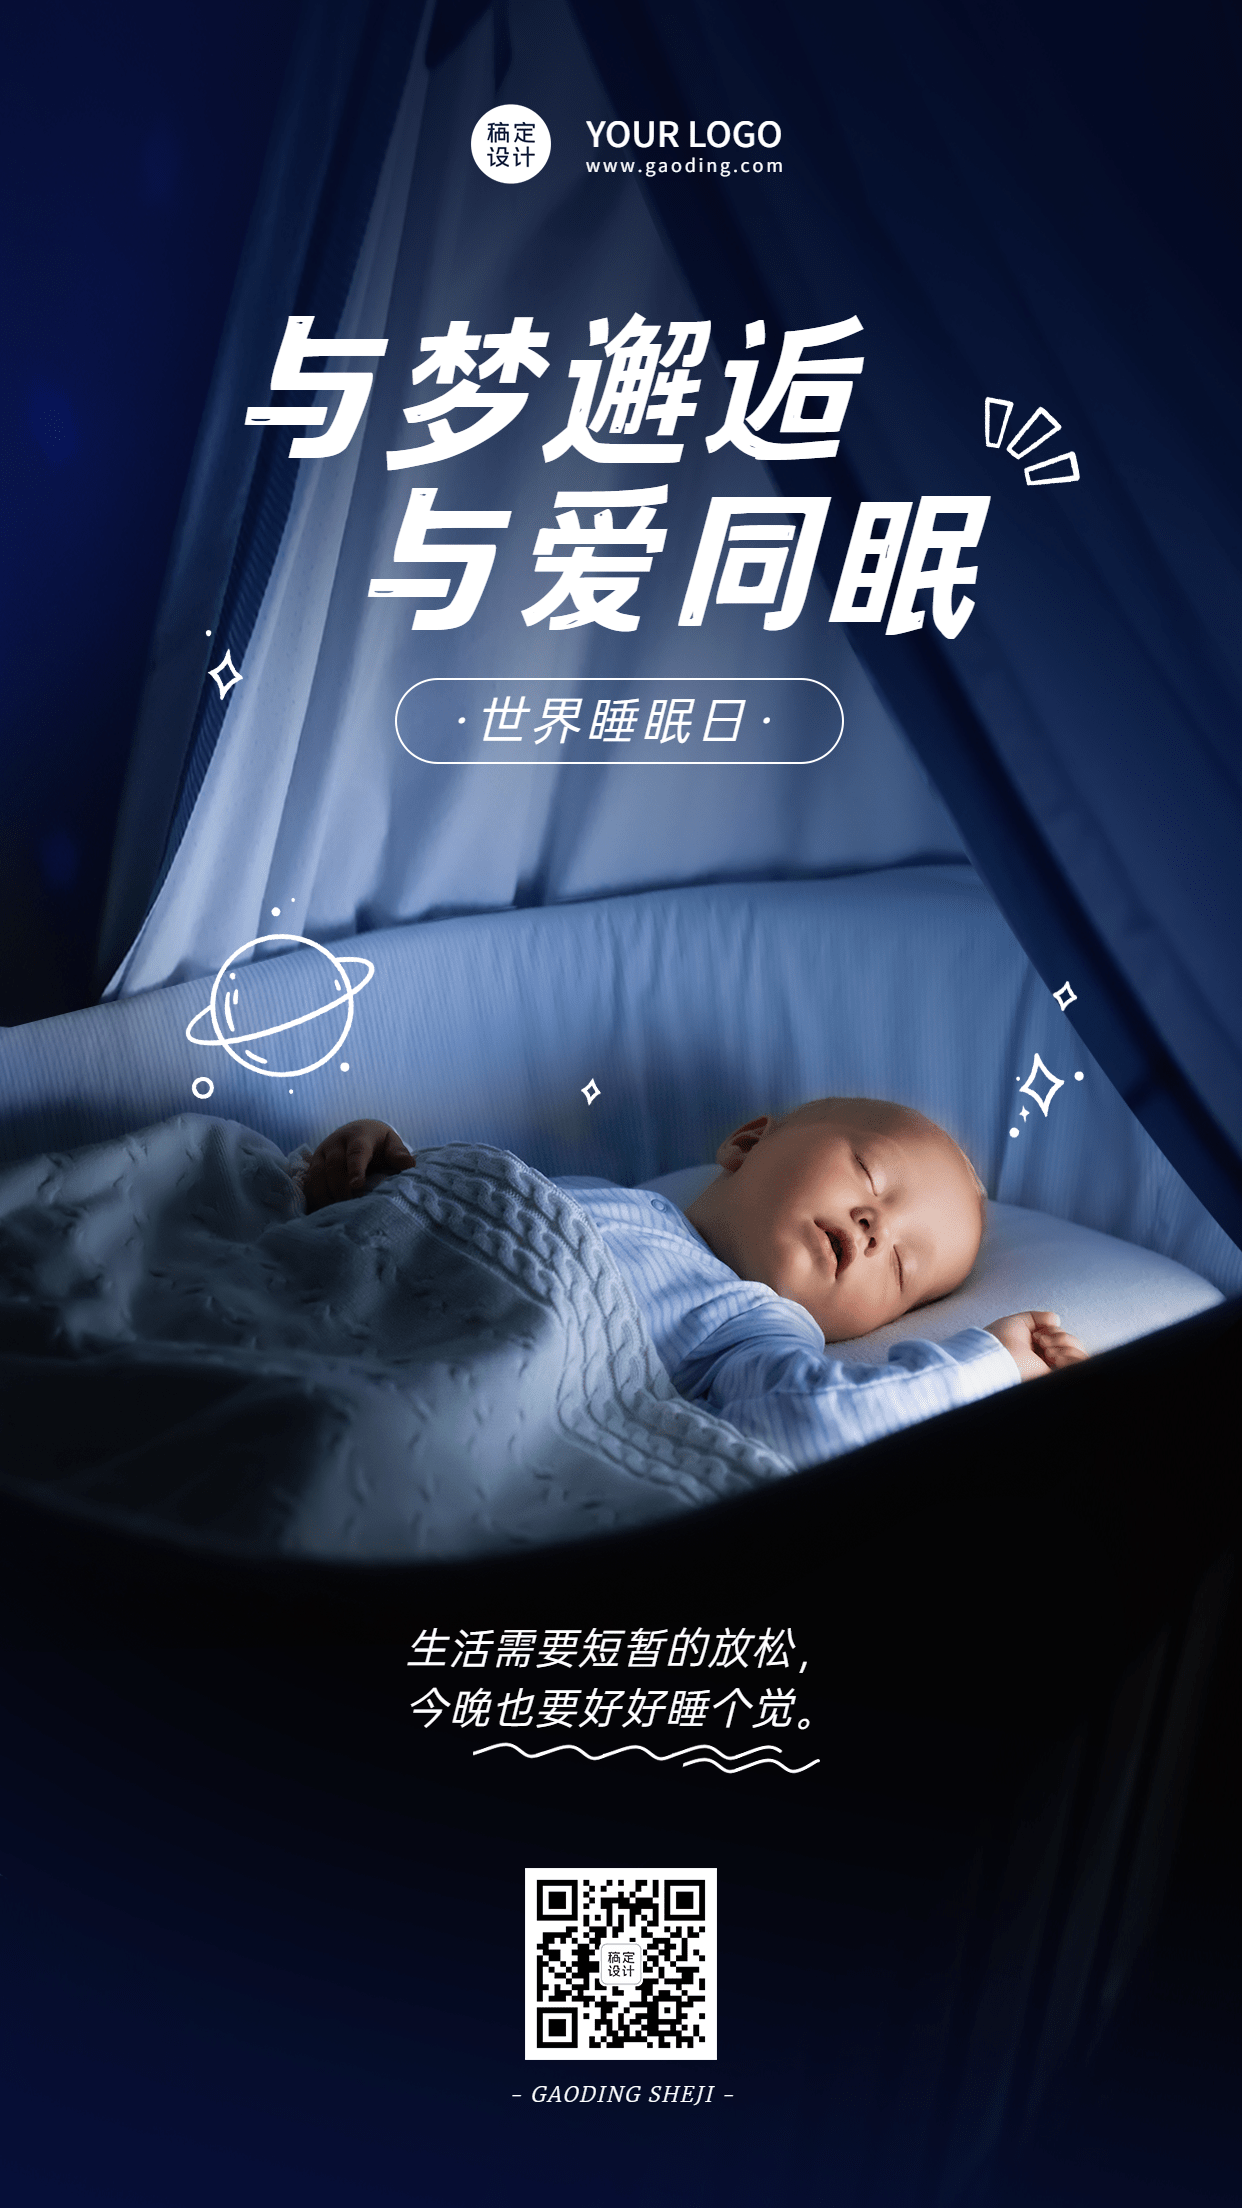 3.21世界睡眠日节日宣传排版手机海报